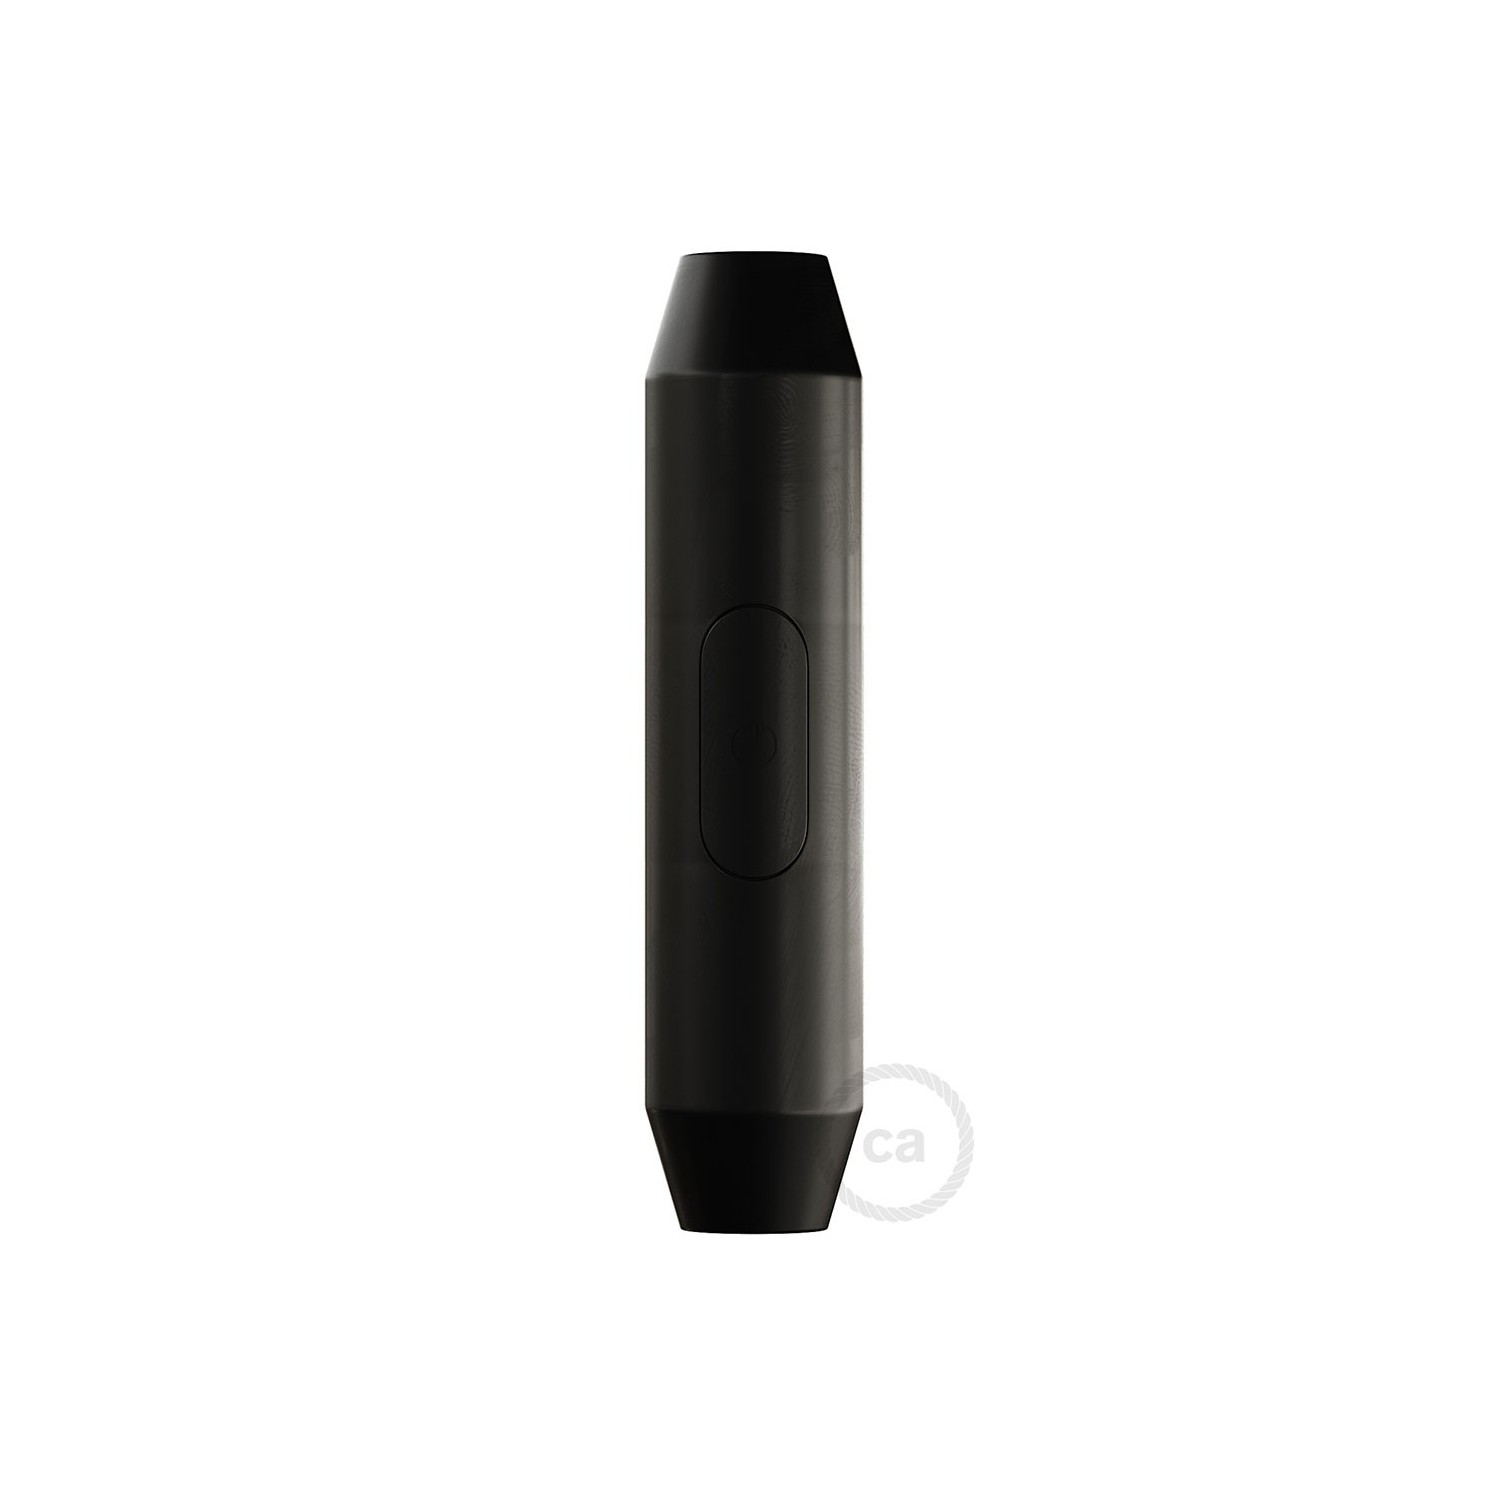 Interruptor unipolar color negro en forma de torpedo - CH56035